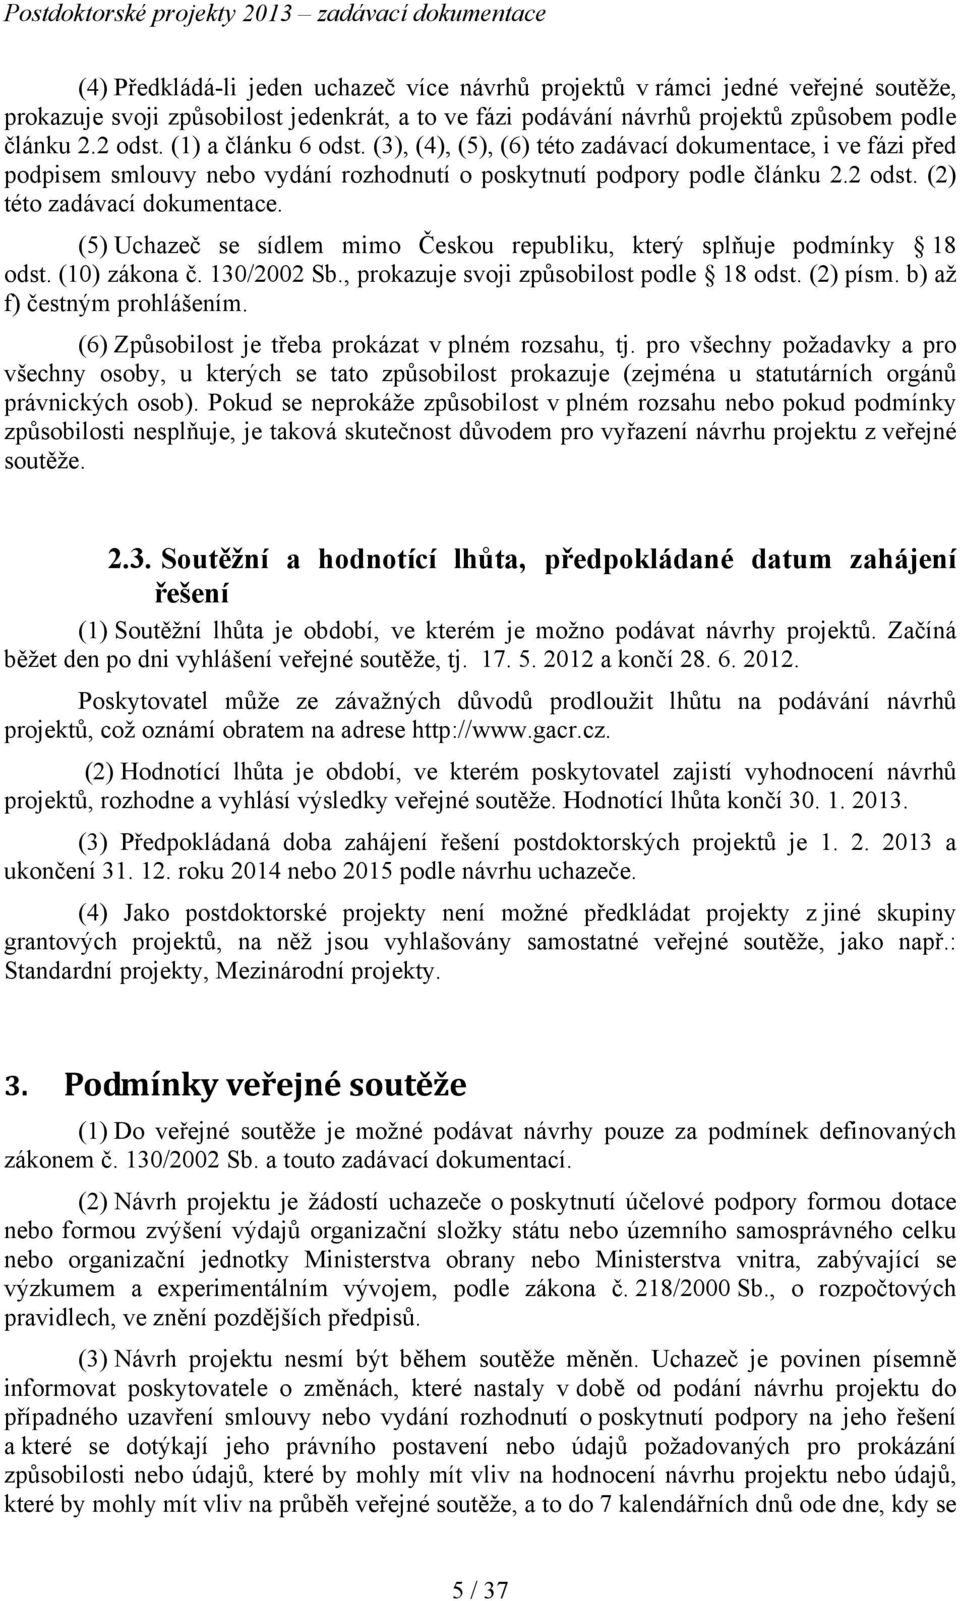 (5) Uchazeč se sídlem mimo Českou republiku, který splňuje podmínky 18 odst. (10) zákona č. 130/2002 Sb., prokazuje svoji způsobilost podle 18 odst. (2) písm. b) až f) čestným prohlášením.